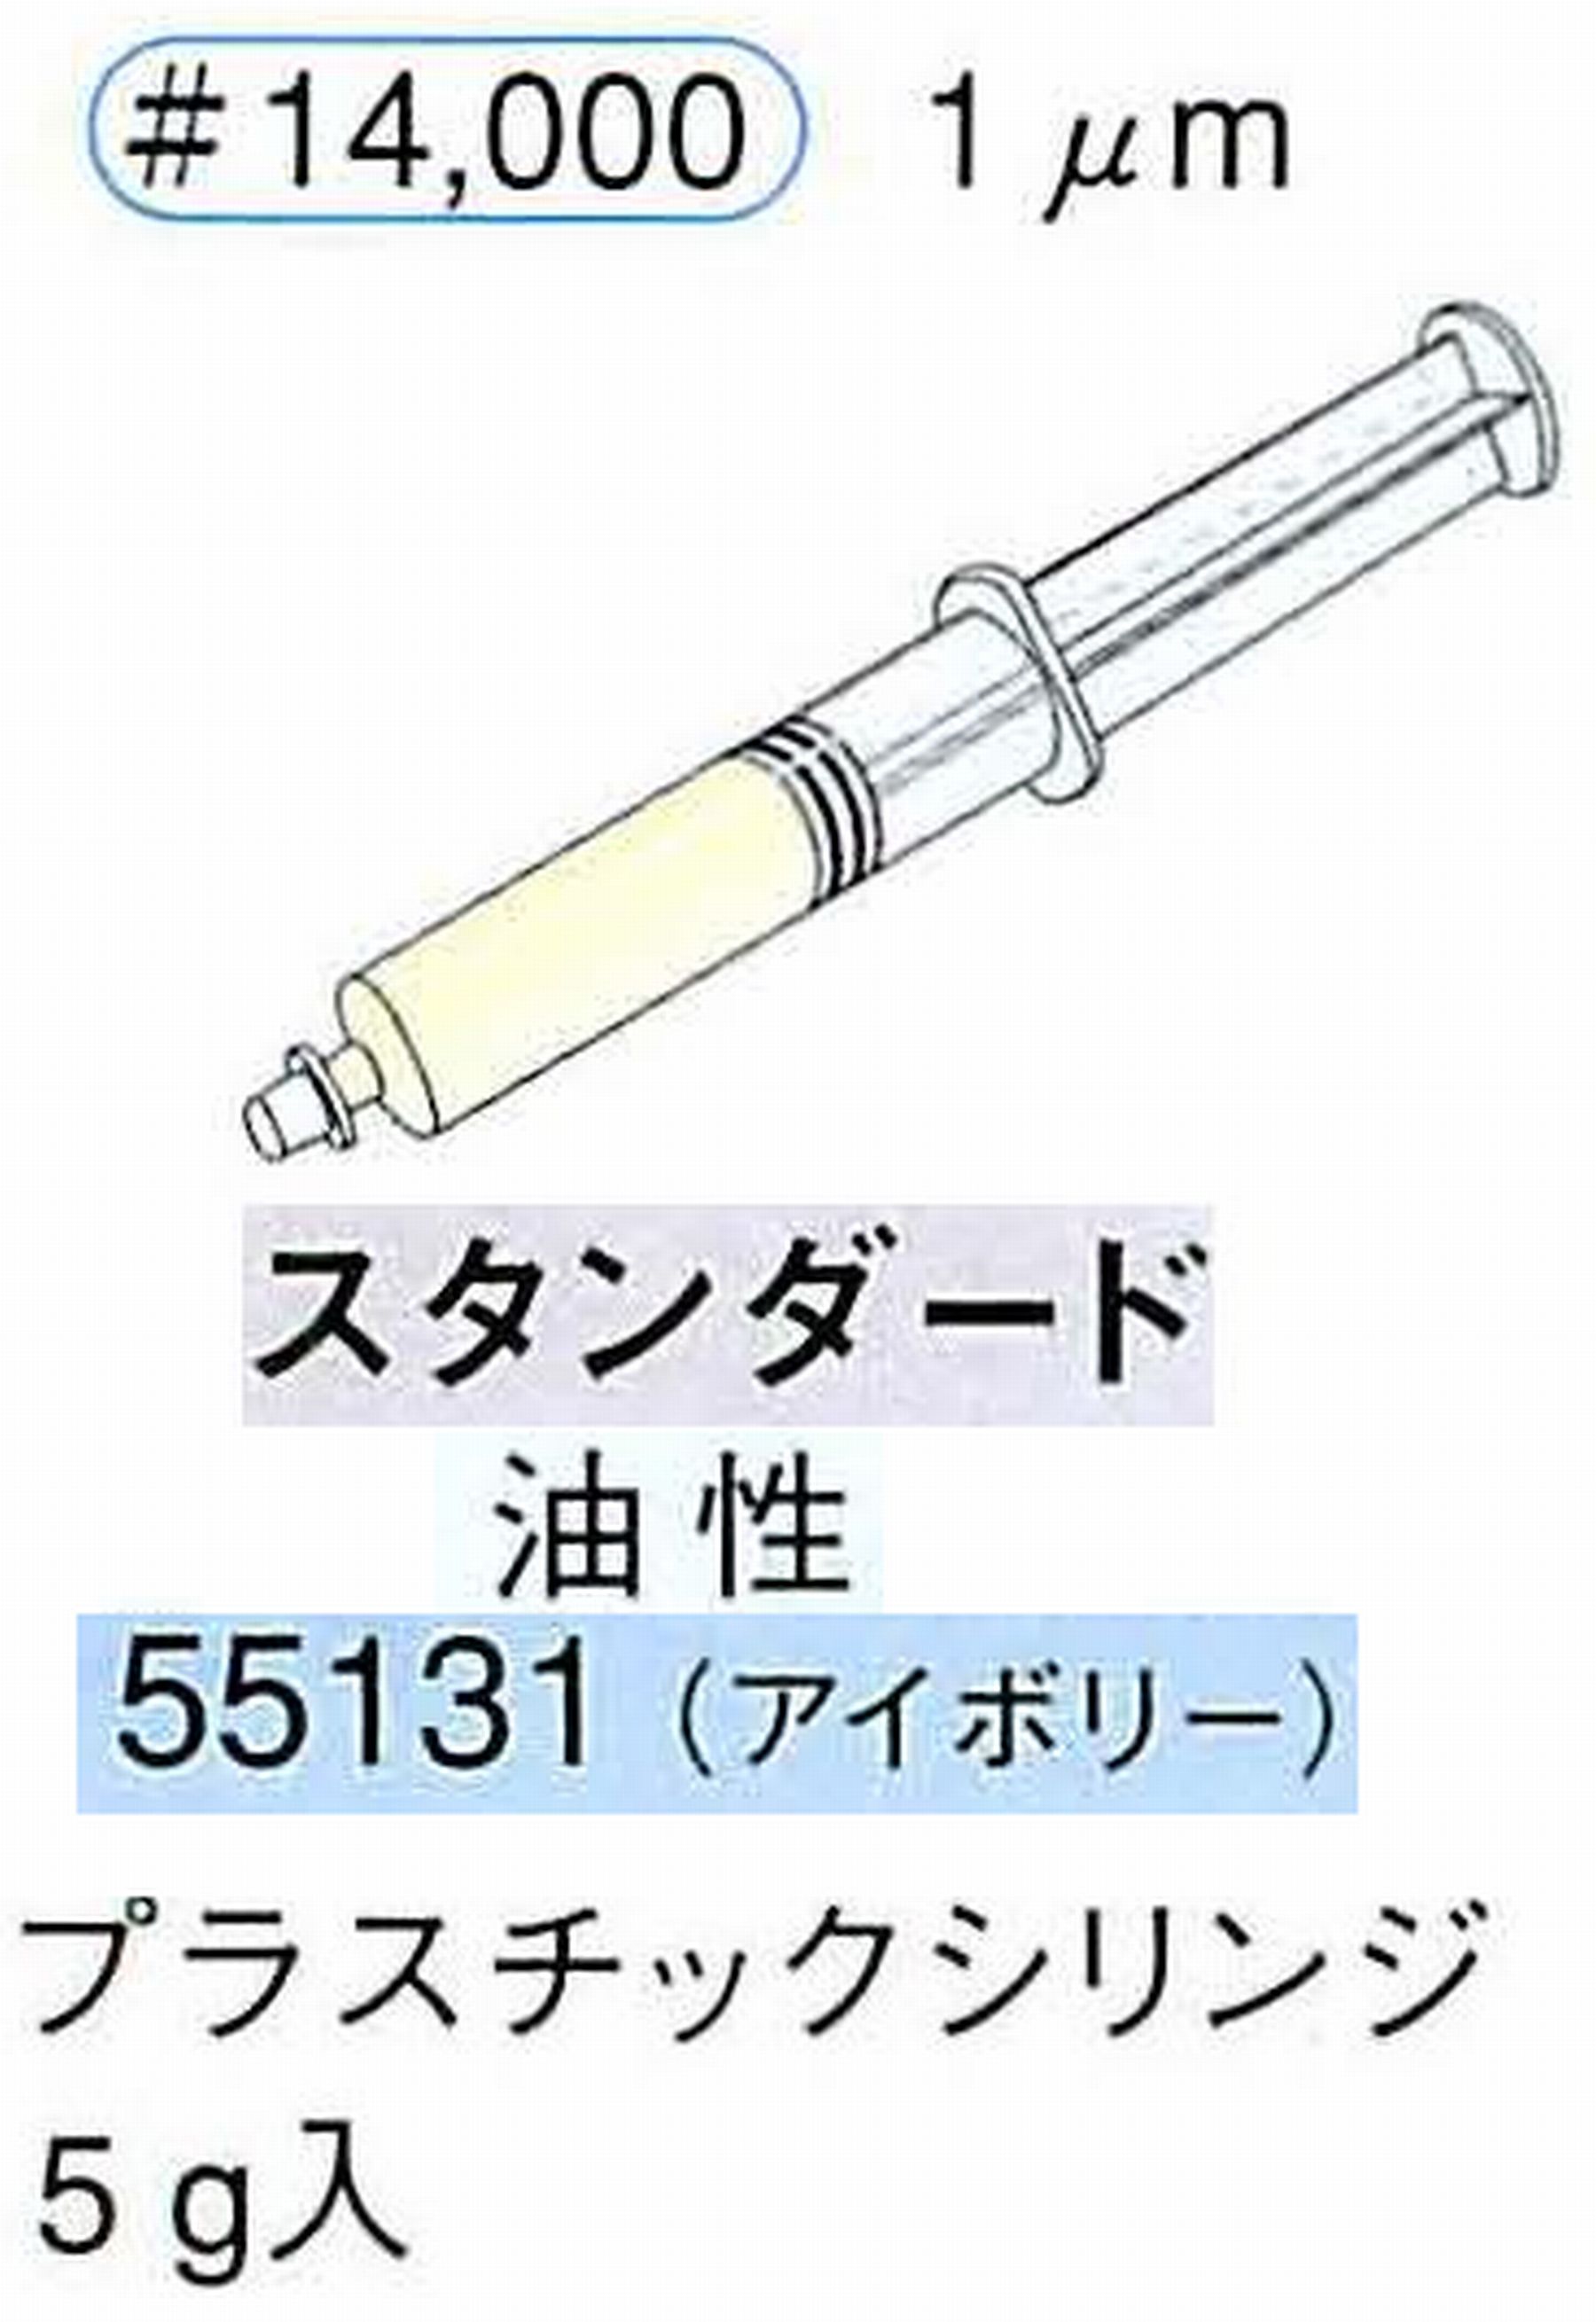 ナカニシ/NAKANISHI ダイヤモンドコンパウンド(ペースト)スタンダード油性 アイボリー 55131